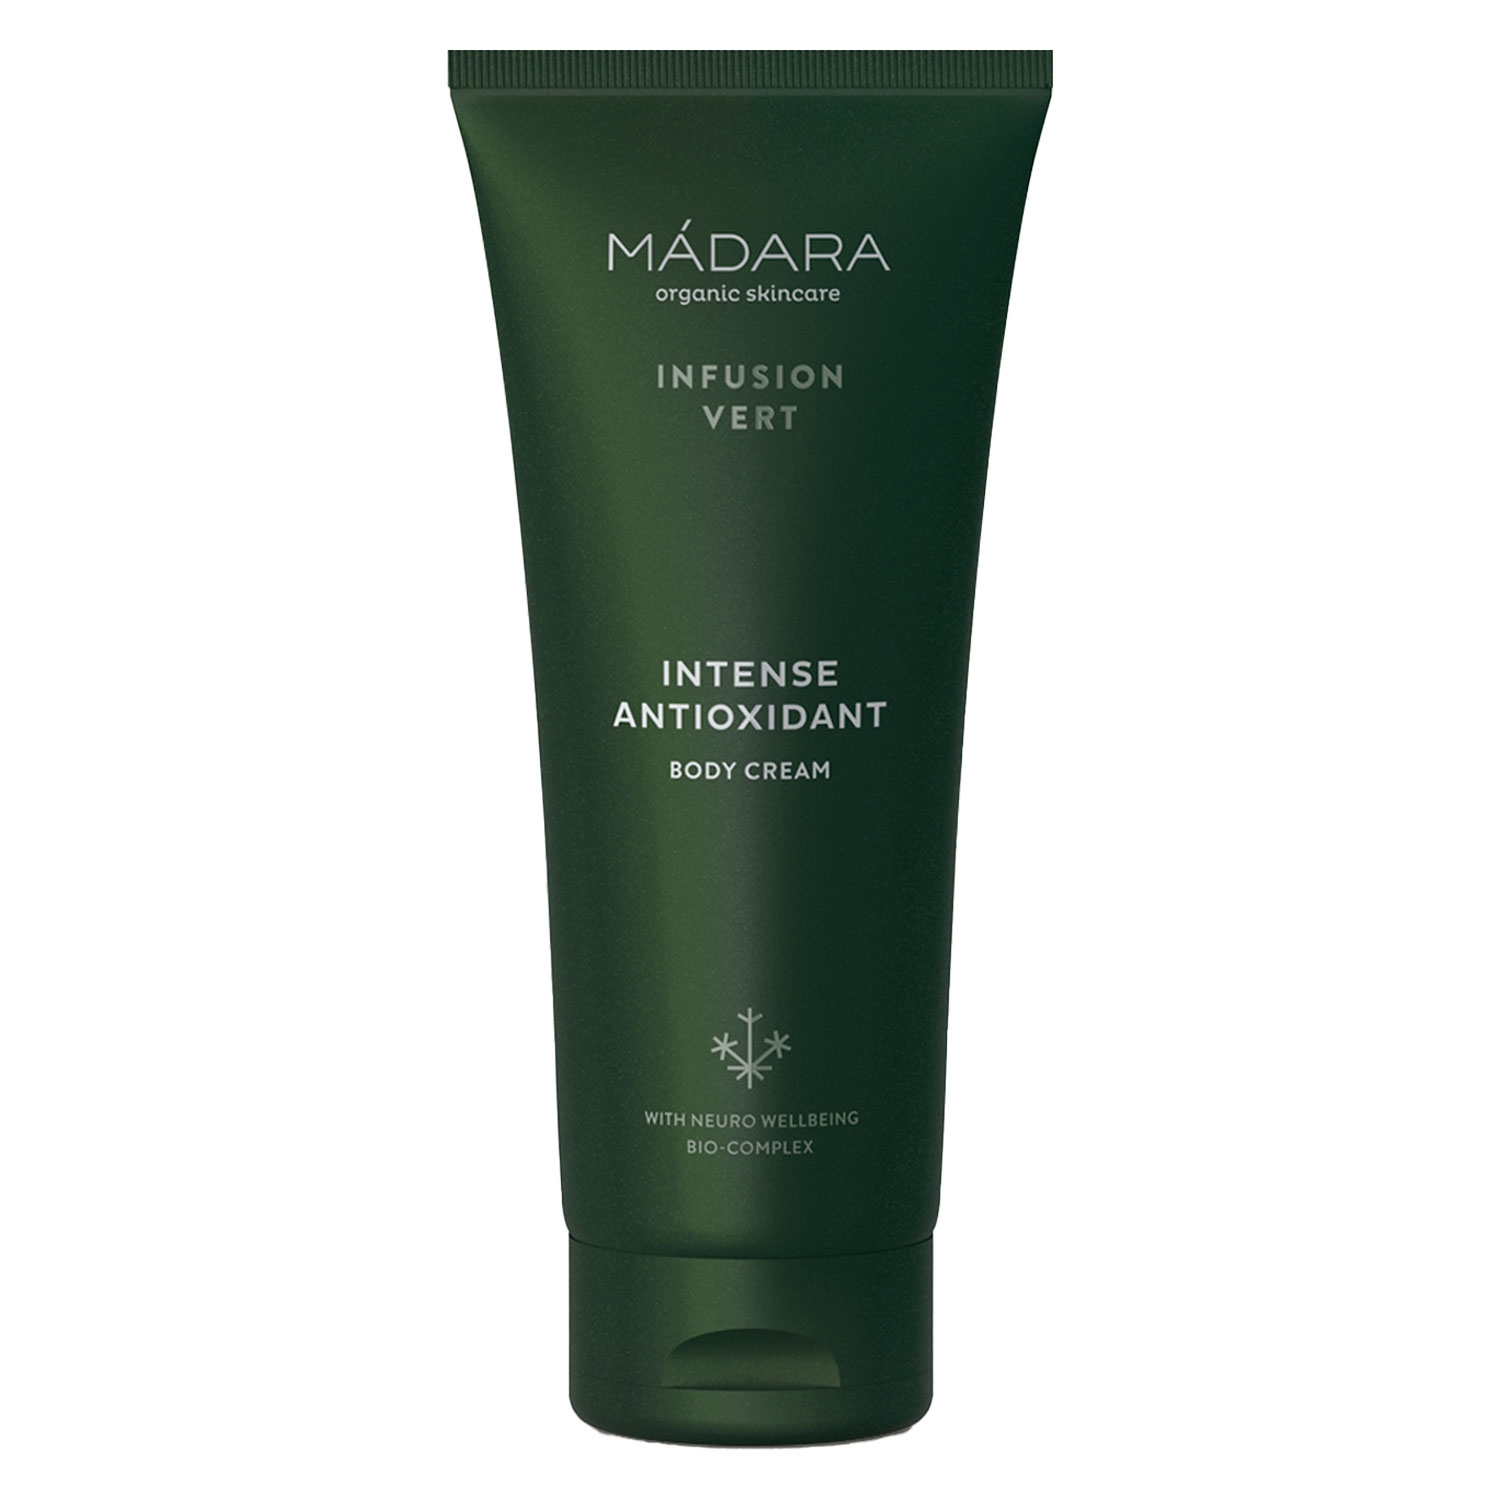 Produktbild von MÁDARA Care - Infusion Vert Intense Antioxidant Body Cream